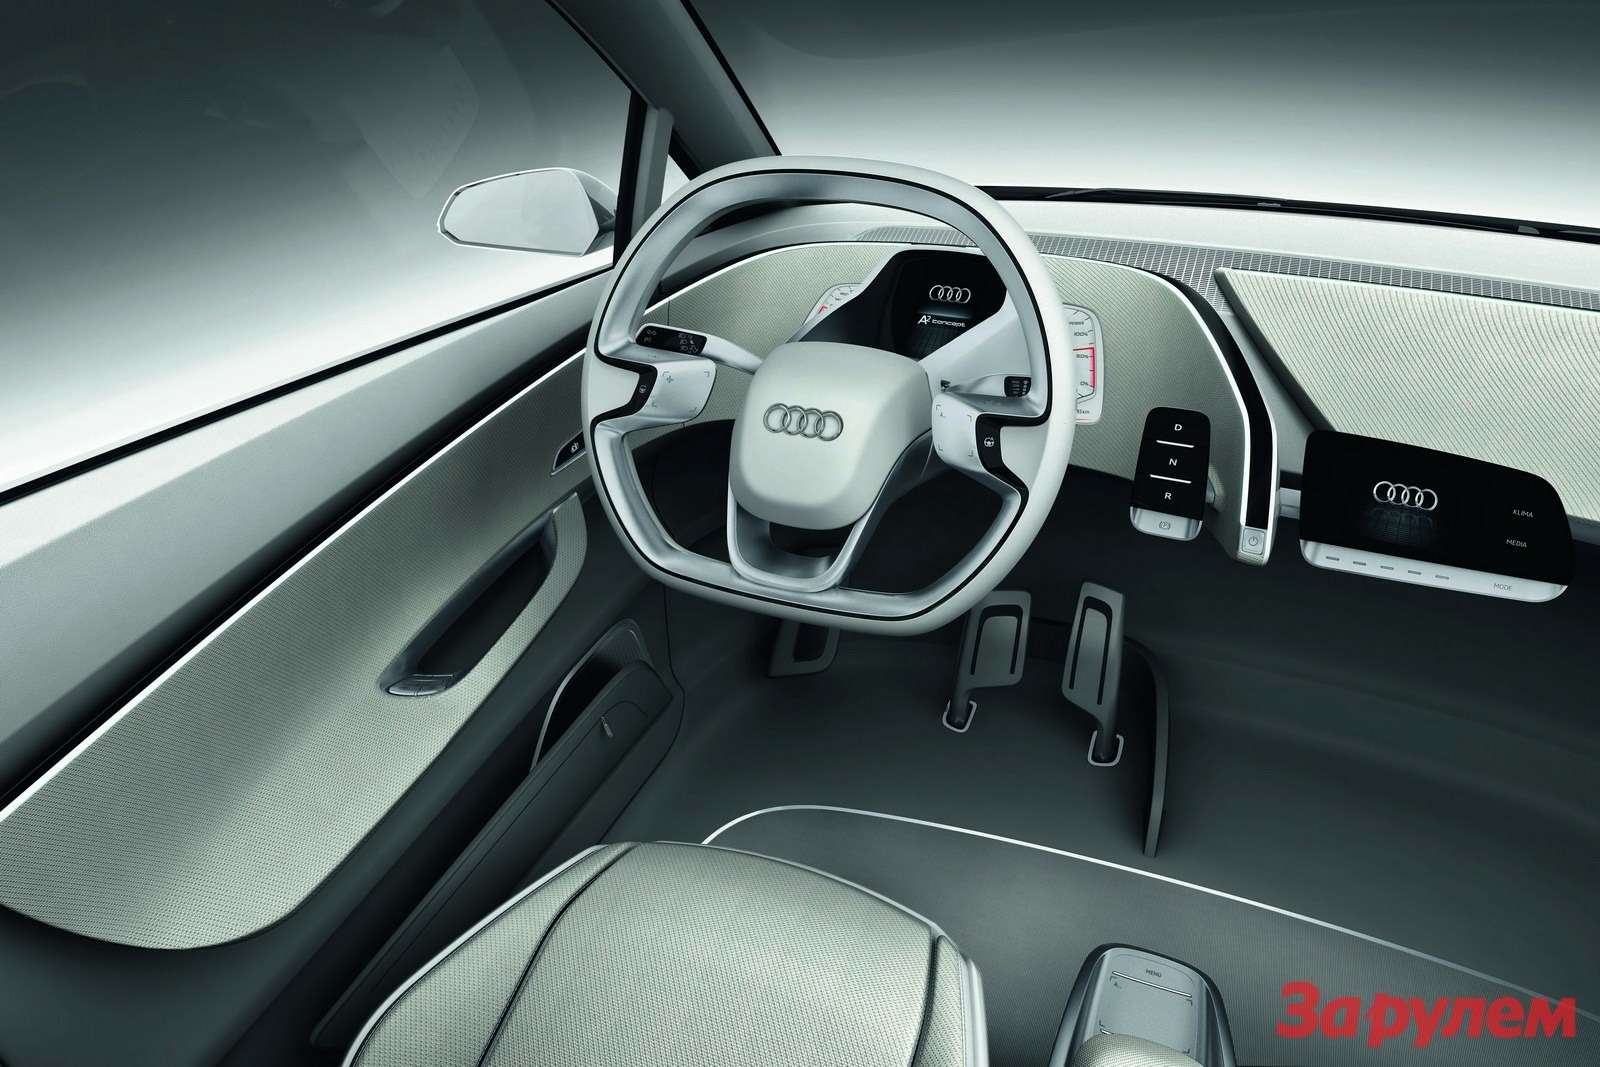 Audi_A2-Concept-16